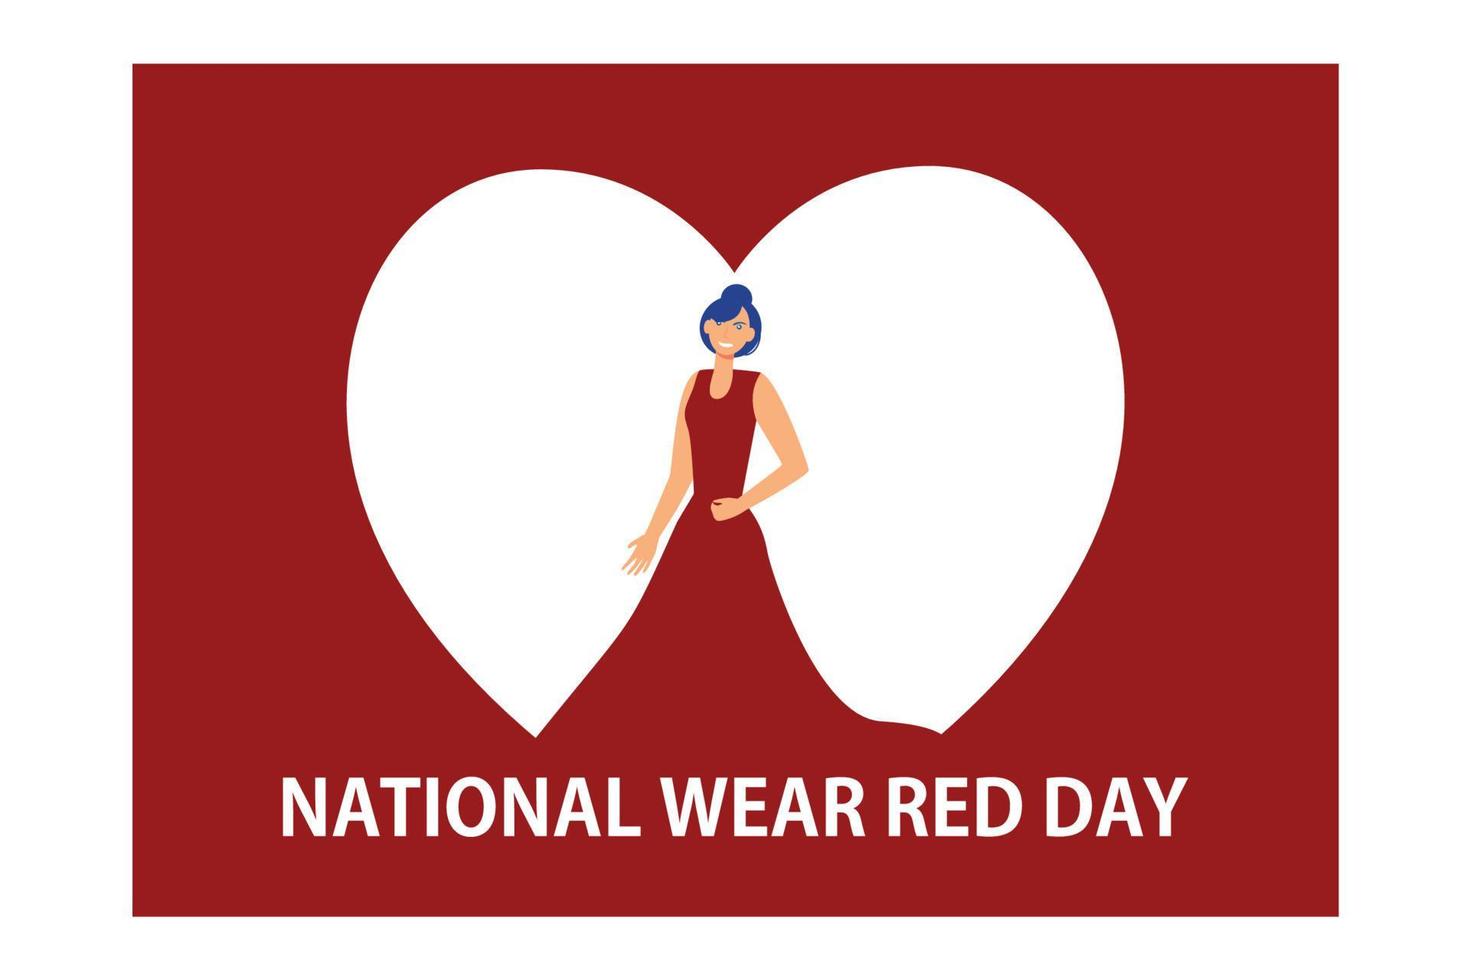 journée nationale d'usure rouge - texte avec différentes polices. femme en robe de soirée rouge regardant en arrière, illustration moderne de vecteur plat